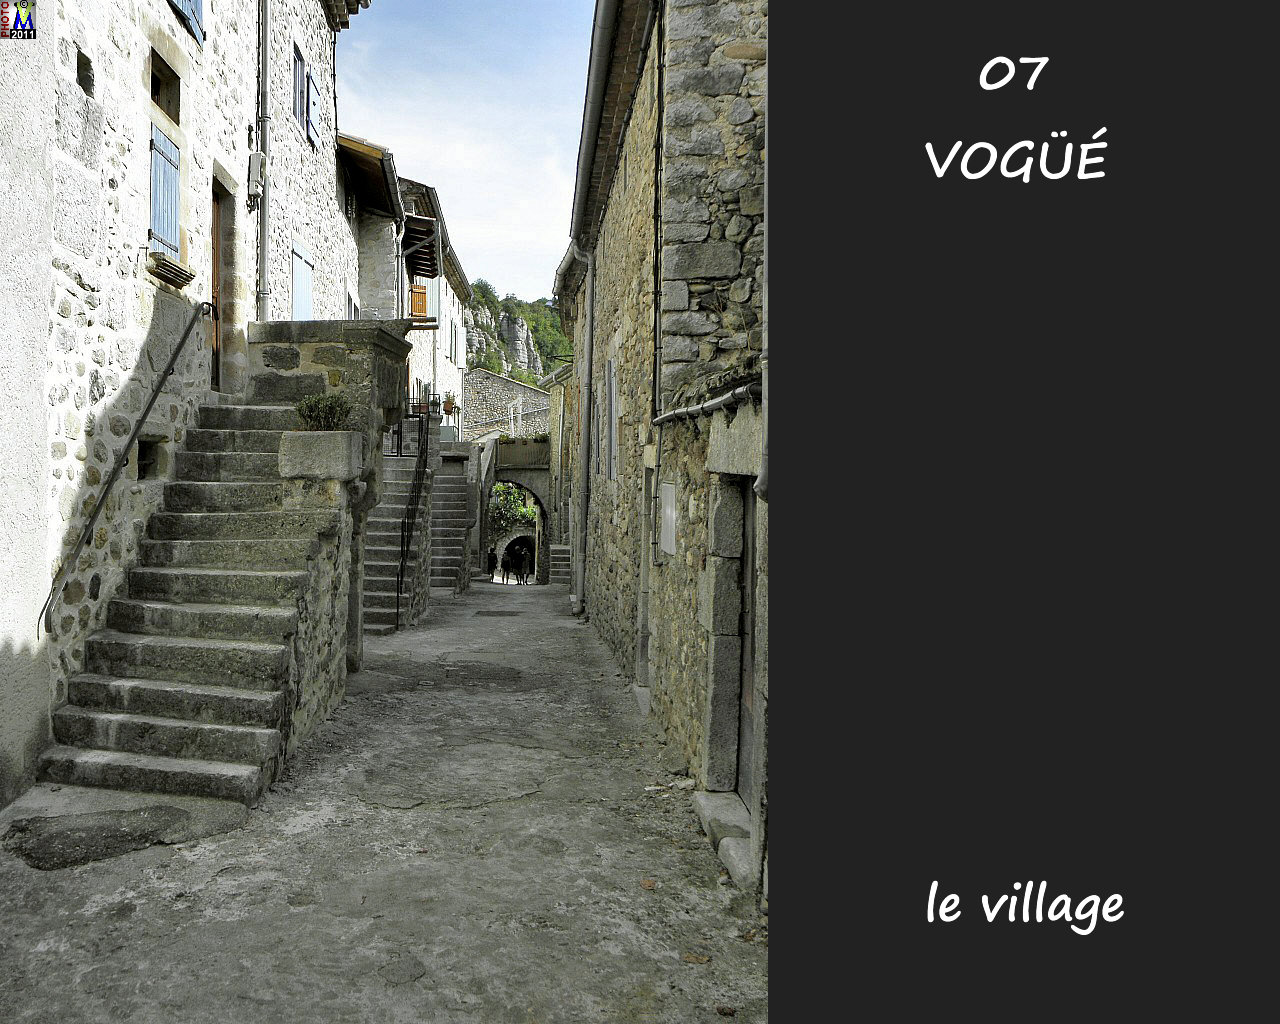 07VOGUE_village_144.jpg